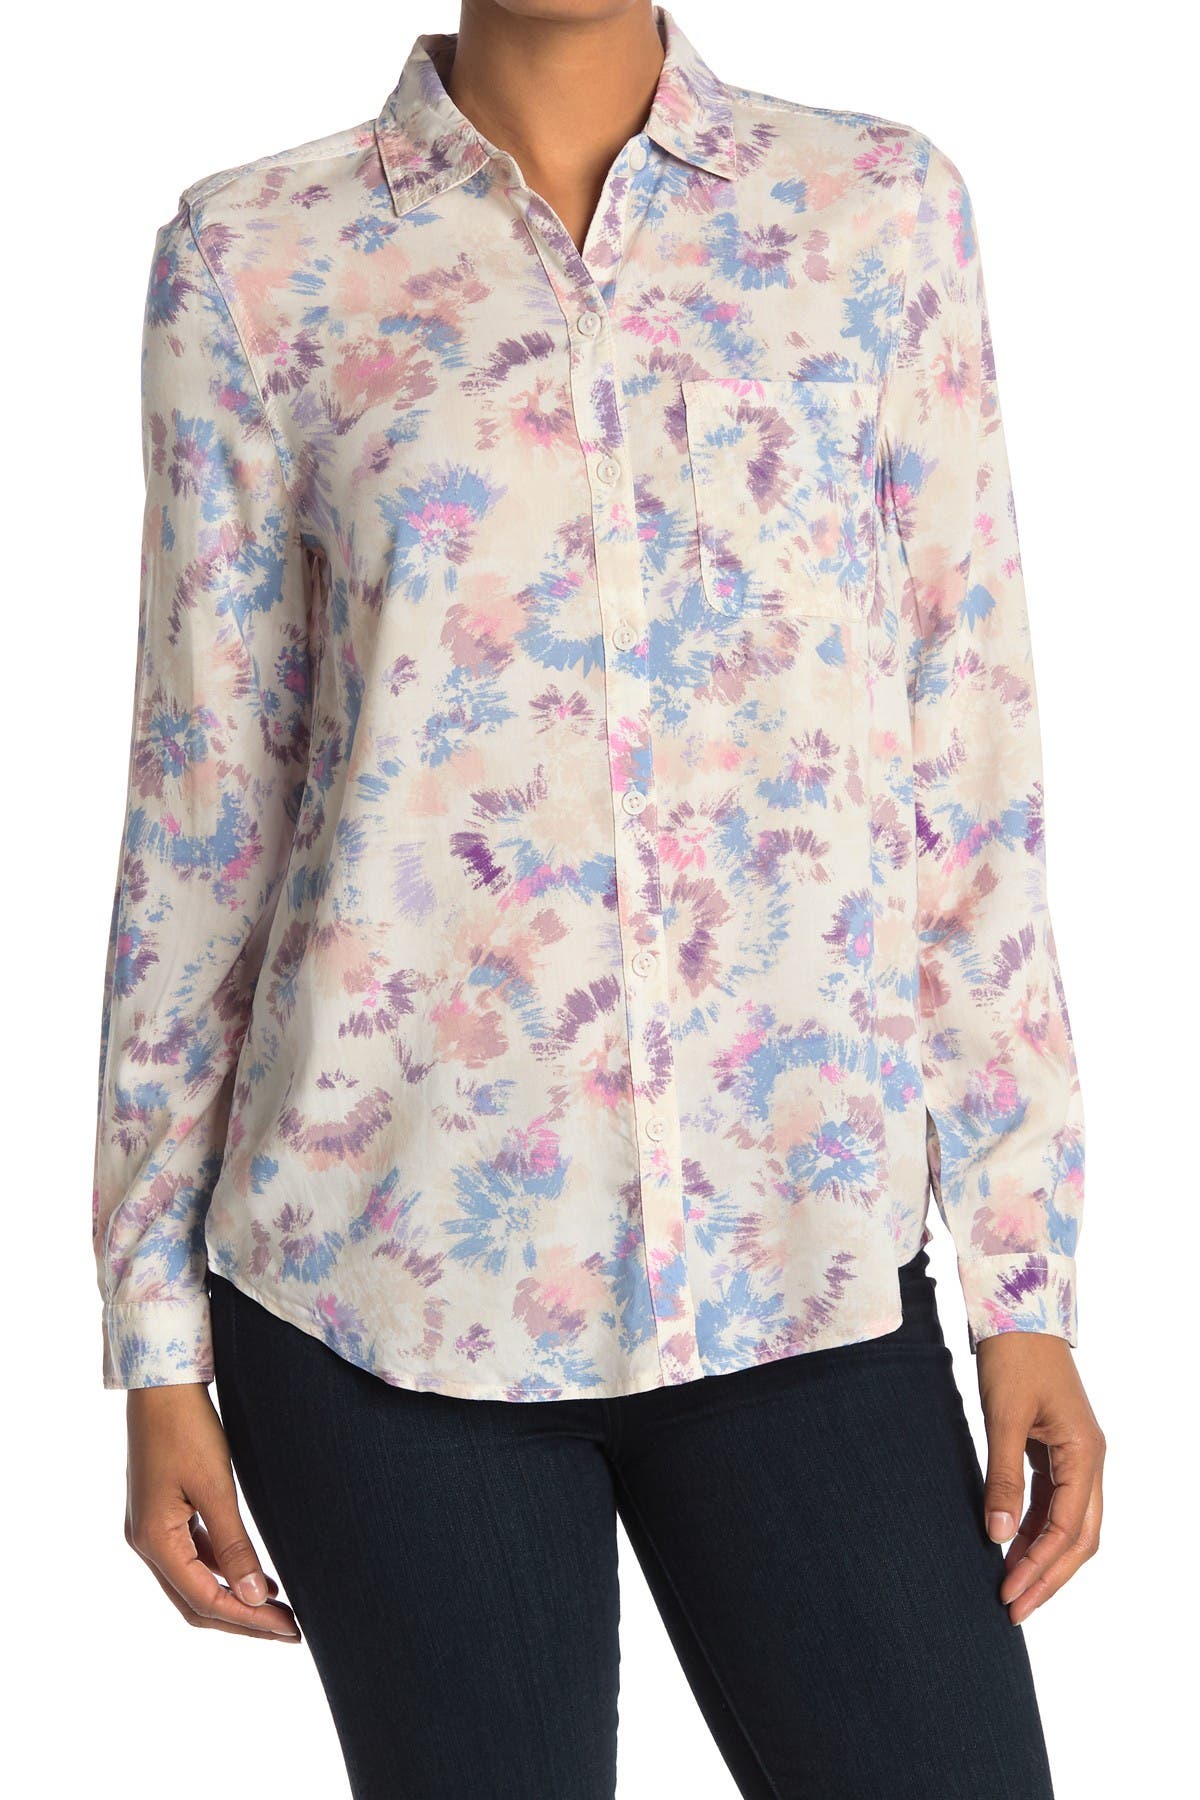 Dosoop Women Hoodie Tops Casual Floral Printed Long Sleeve Drawstring Sweatshirt Sweater Loose Blouse Pullover T-Shirt Tee